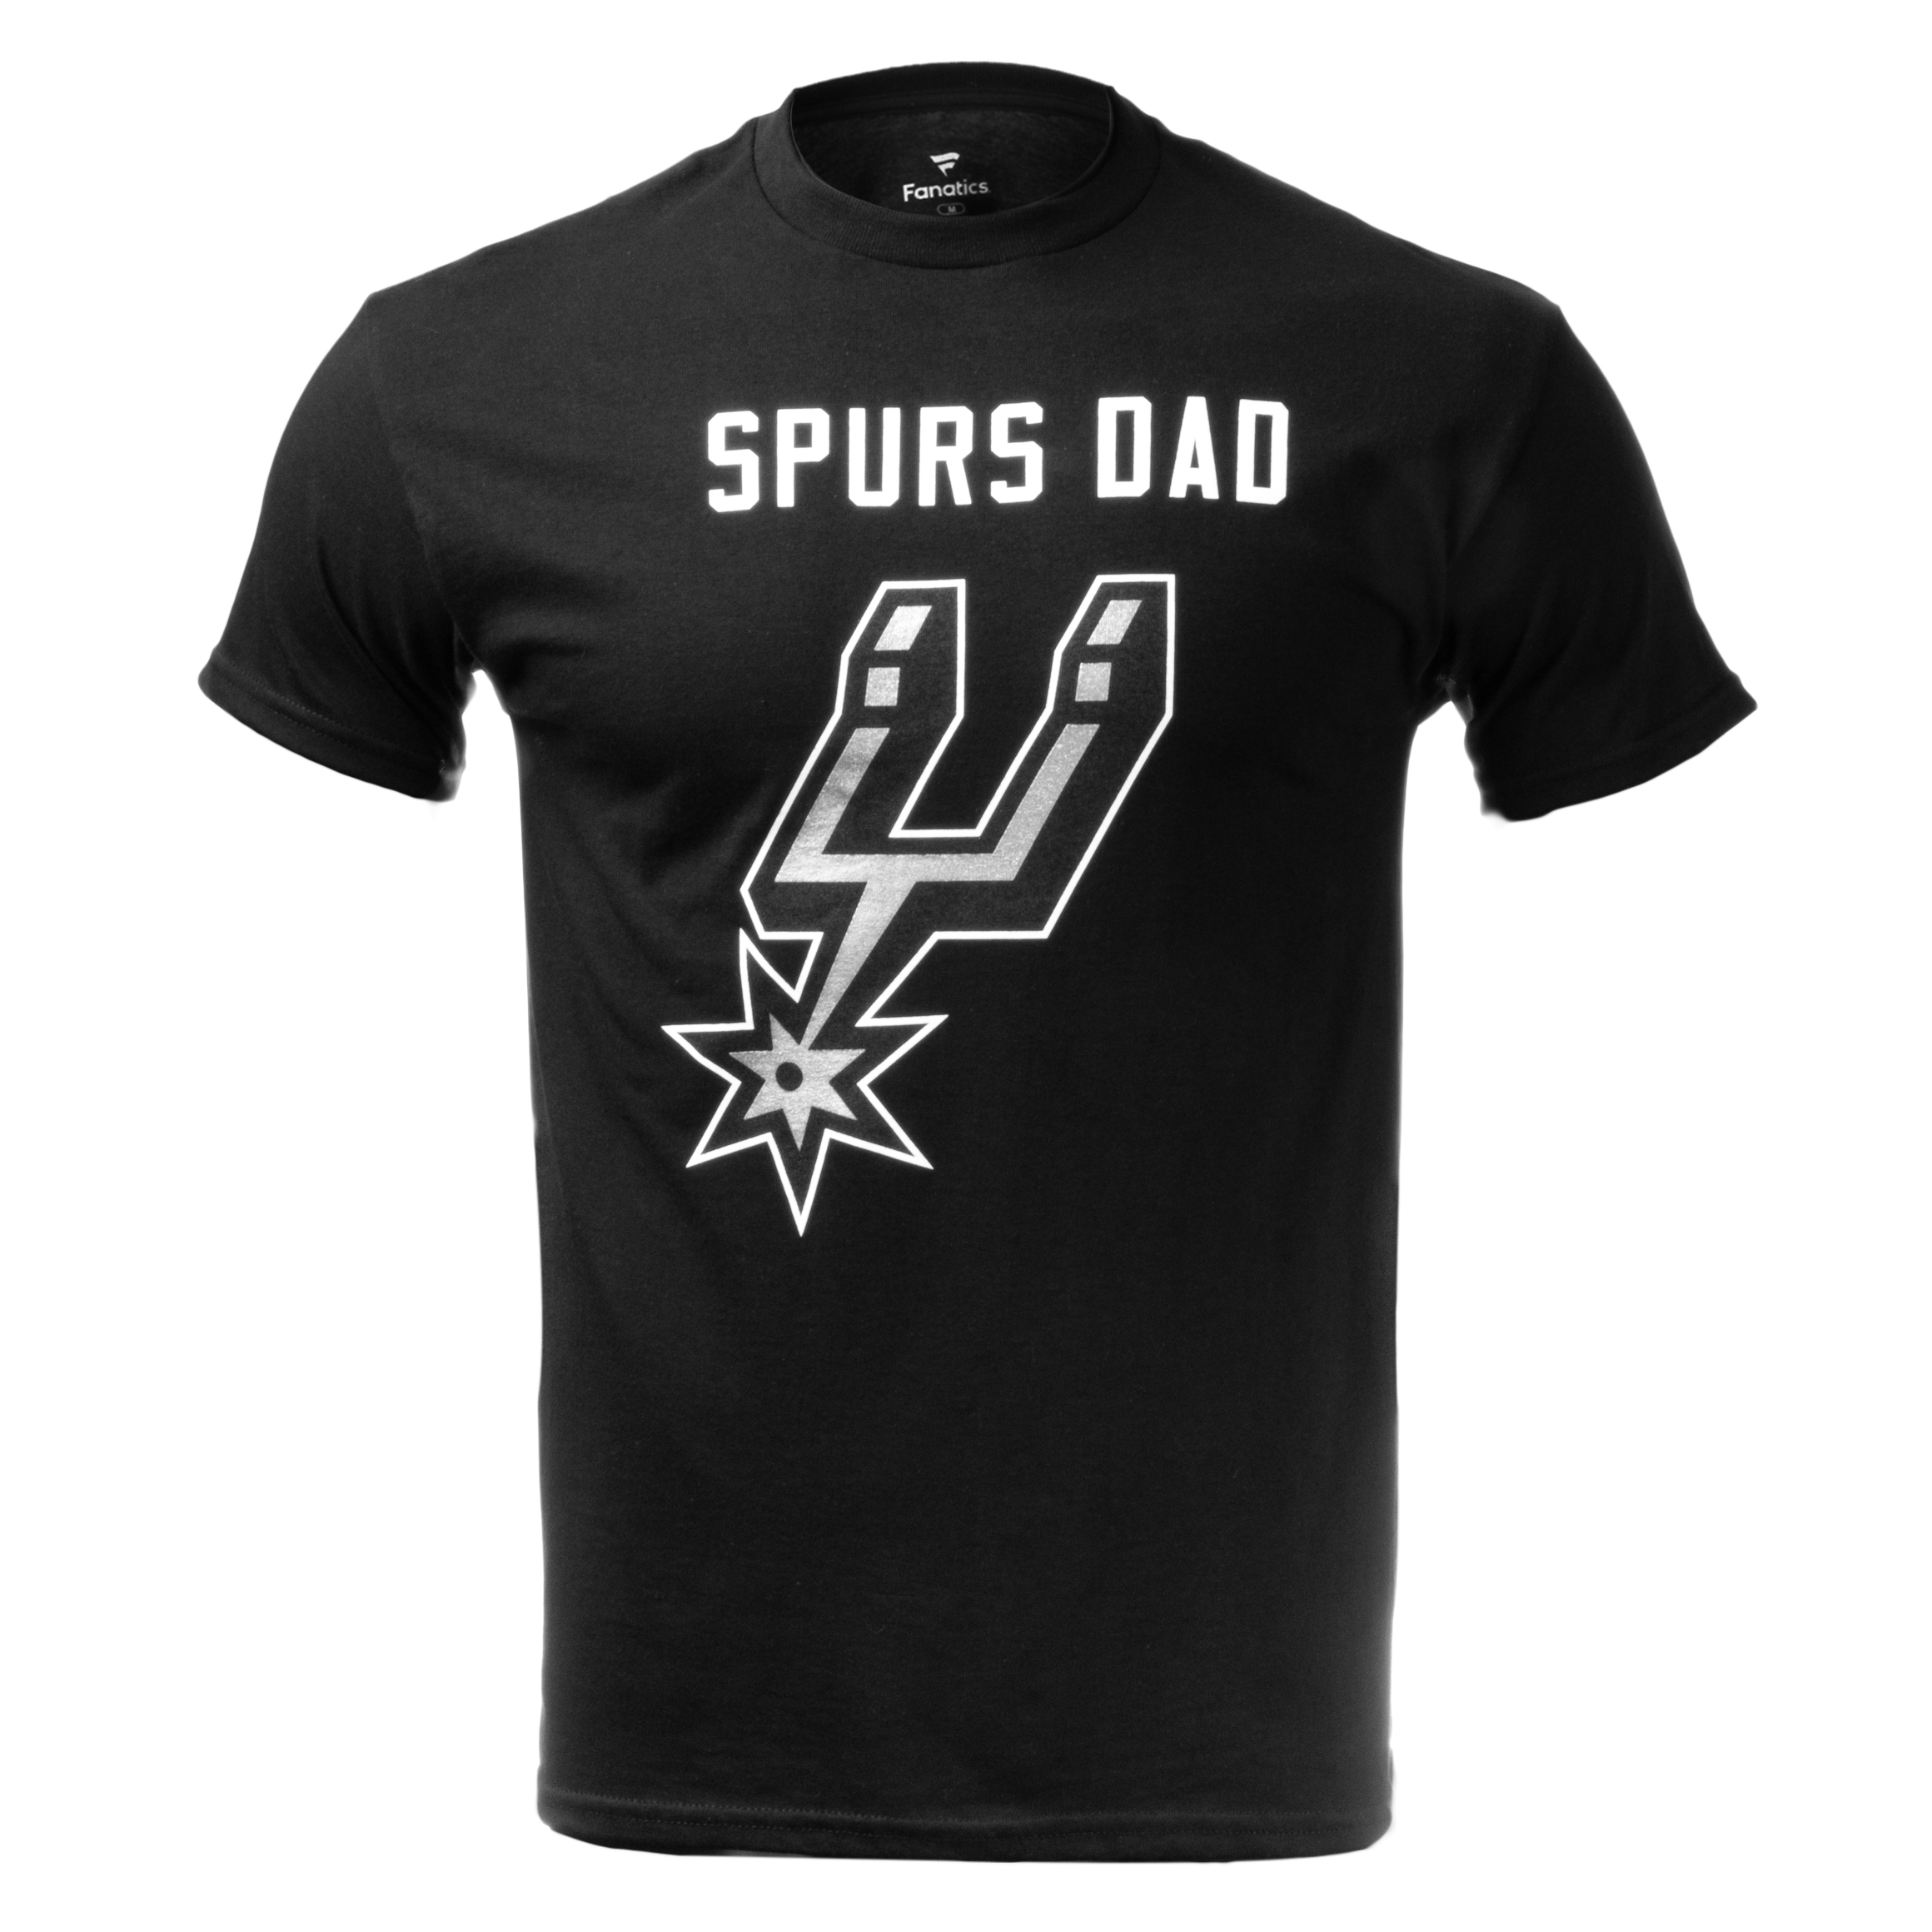 San Antonio Spurs Men's Fanatics Spurs DAD T-Shirt - Black